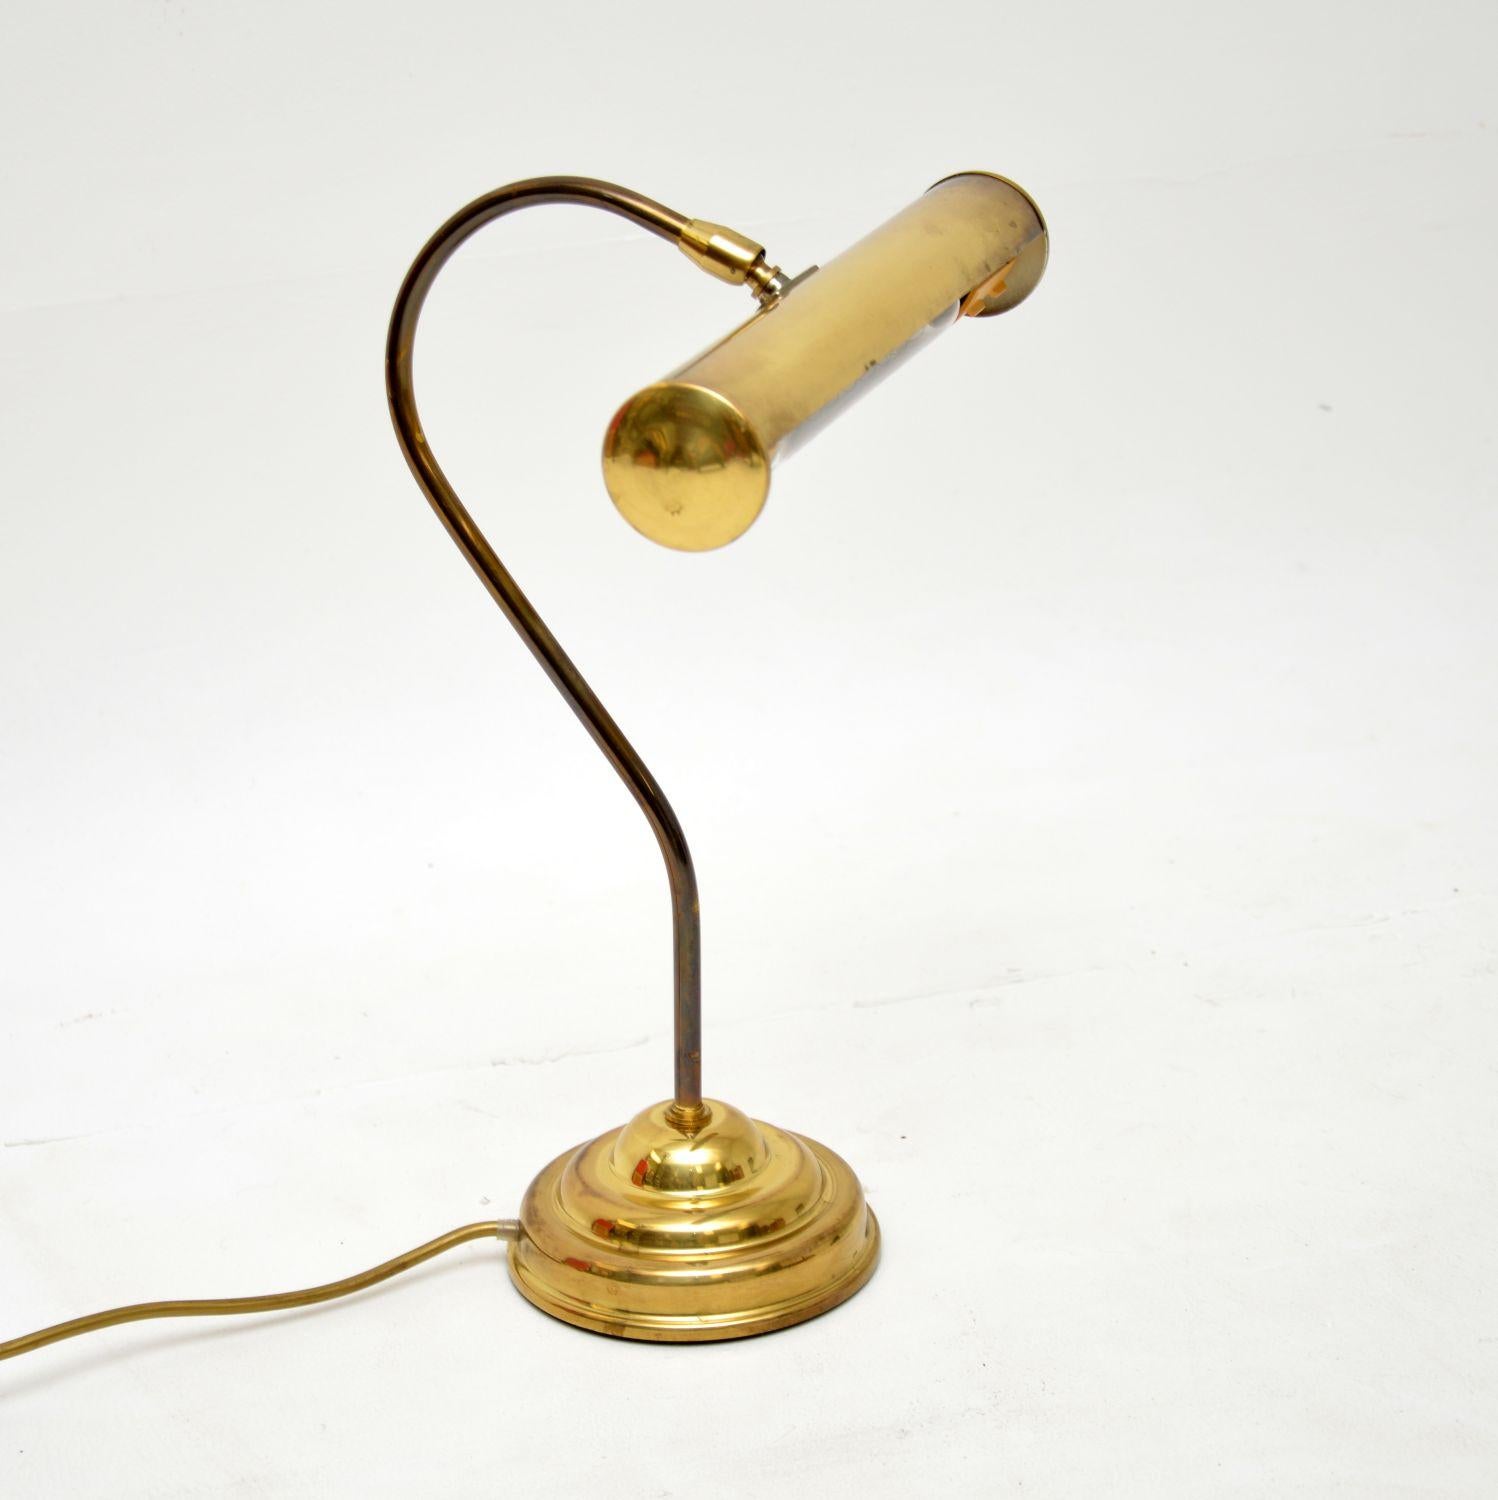 Cette fabuleuse lampe de bureau vintage en laiton a été fabriquée en Angleterre et date des années 1950-60.

Il est très bien fait, avec un joli design. L'abat-jour allongé peut s'incliner et pivoter pour ajuster l'angle de la lumière.

La